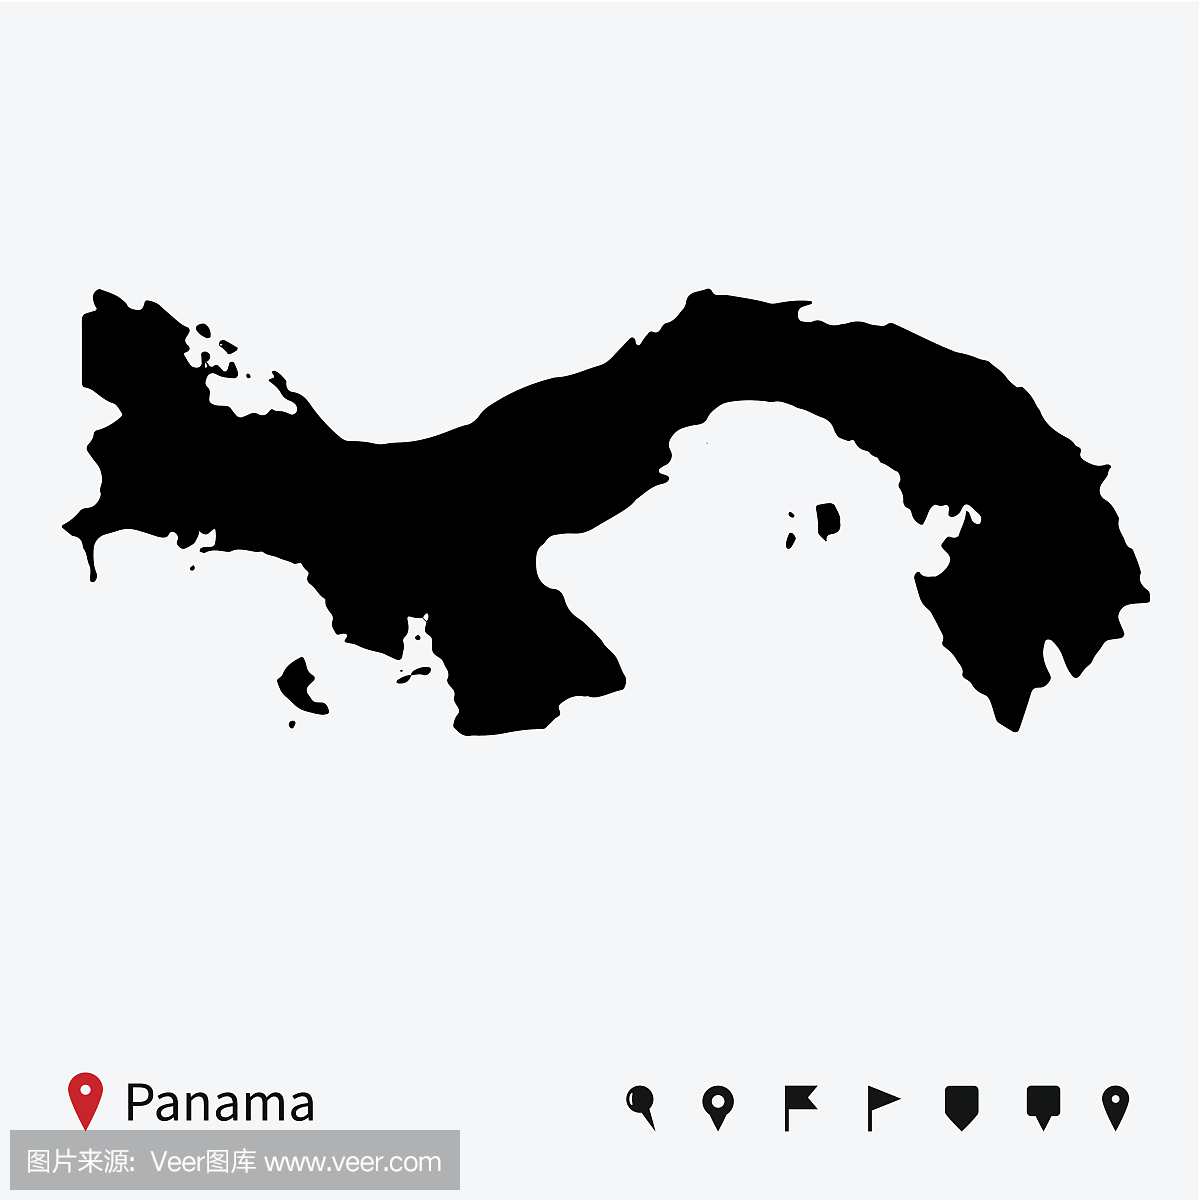 高详细的巴拿马矢量地图导航引脚。